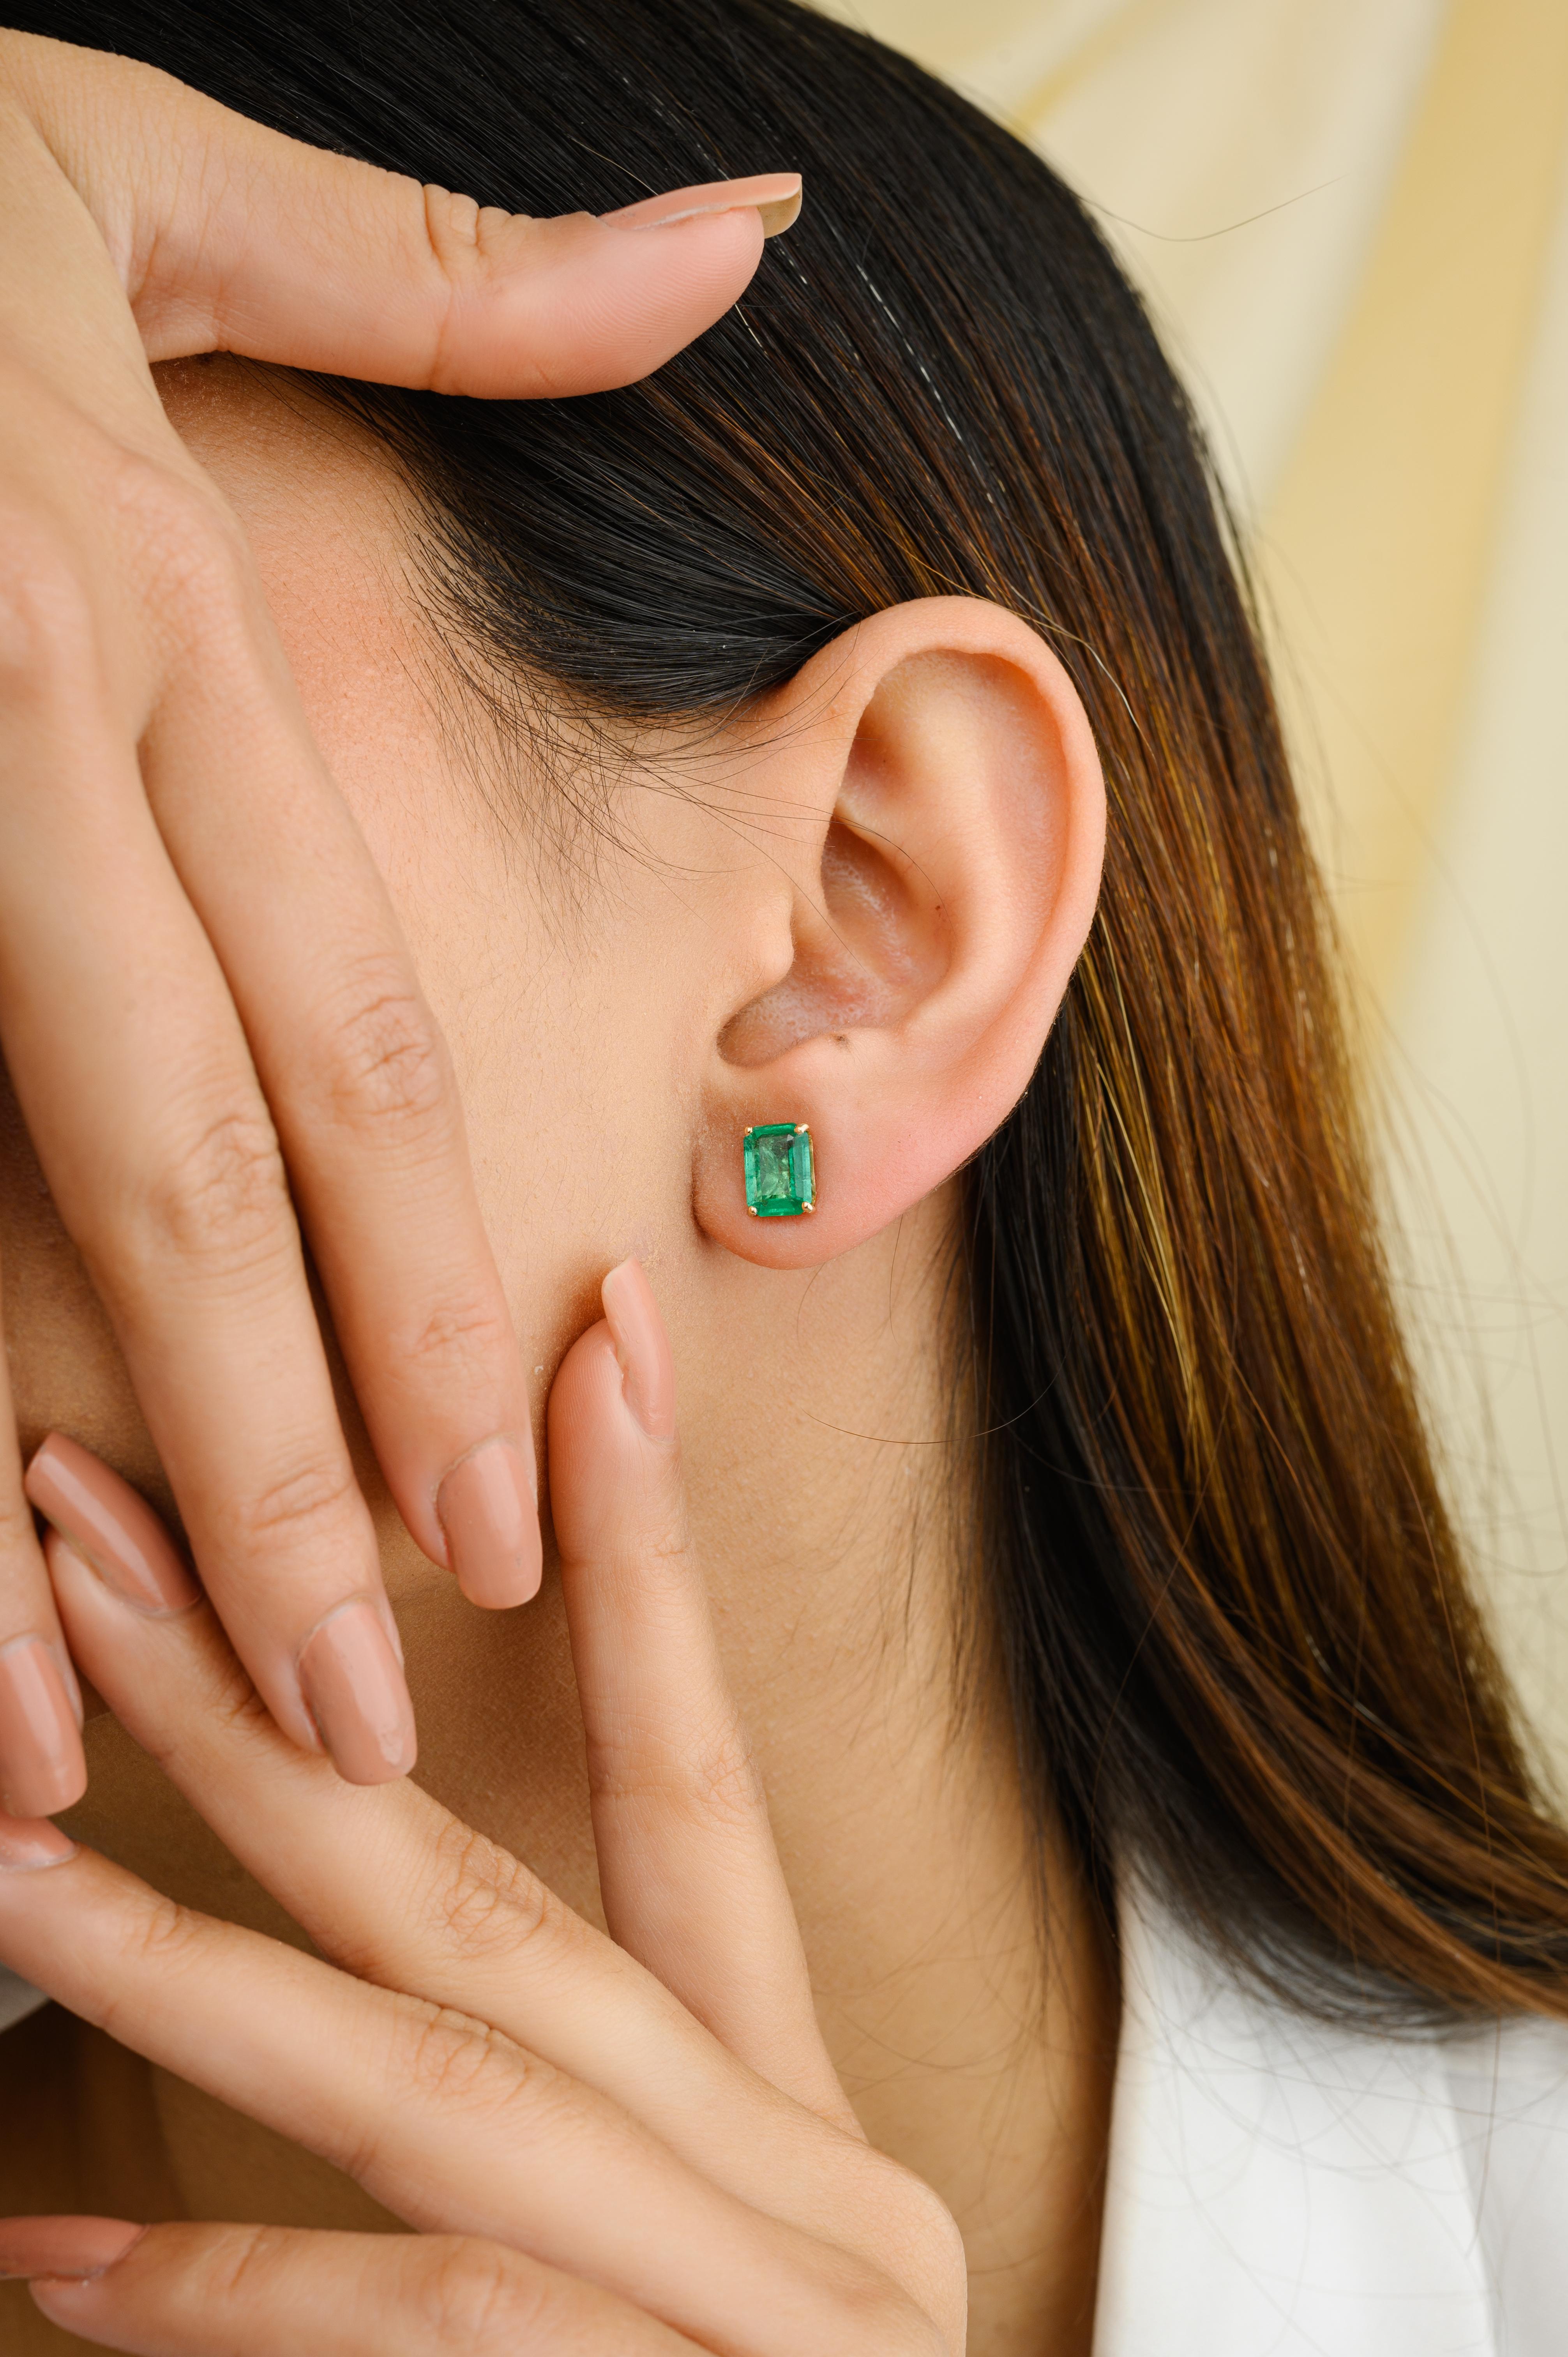 Natürliche Solitär-Smaragd-Ohrstecker aus 18 Karat Gold, um Ihren Look zu unterstreichen. Sie brauchen Ohrstecker, um mit Ihrem Look ein Statement zu setzen. Diese Ohrringe mit Smaragd im Oktagon-Schliff sorgen für einen funkelnden, luxuriösen